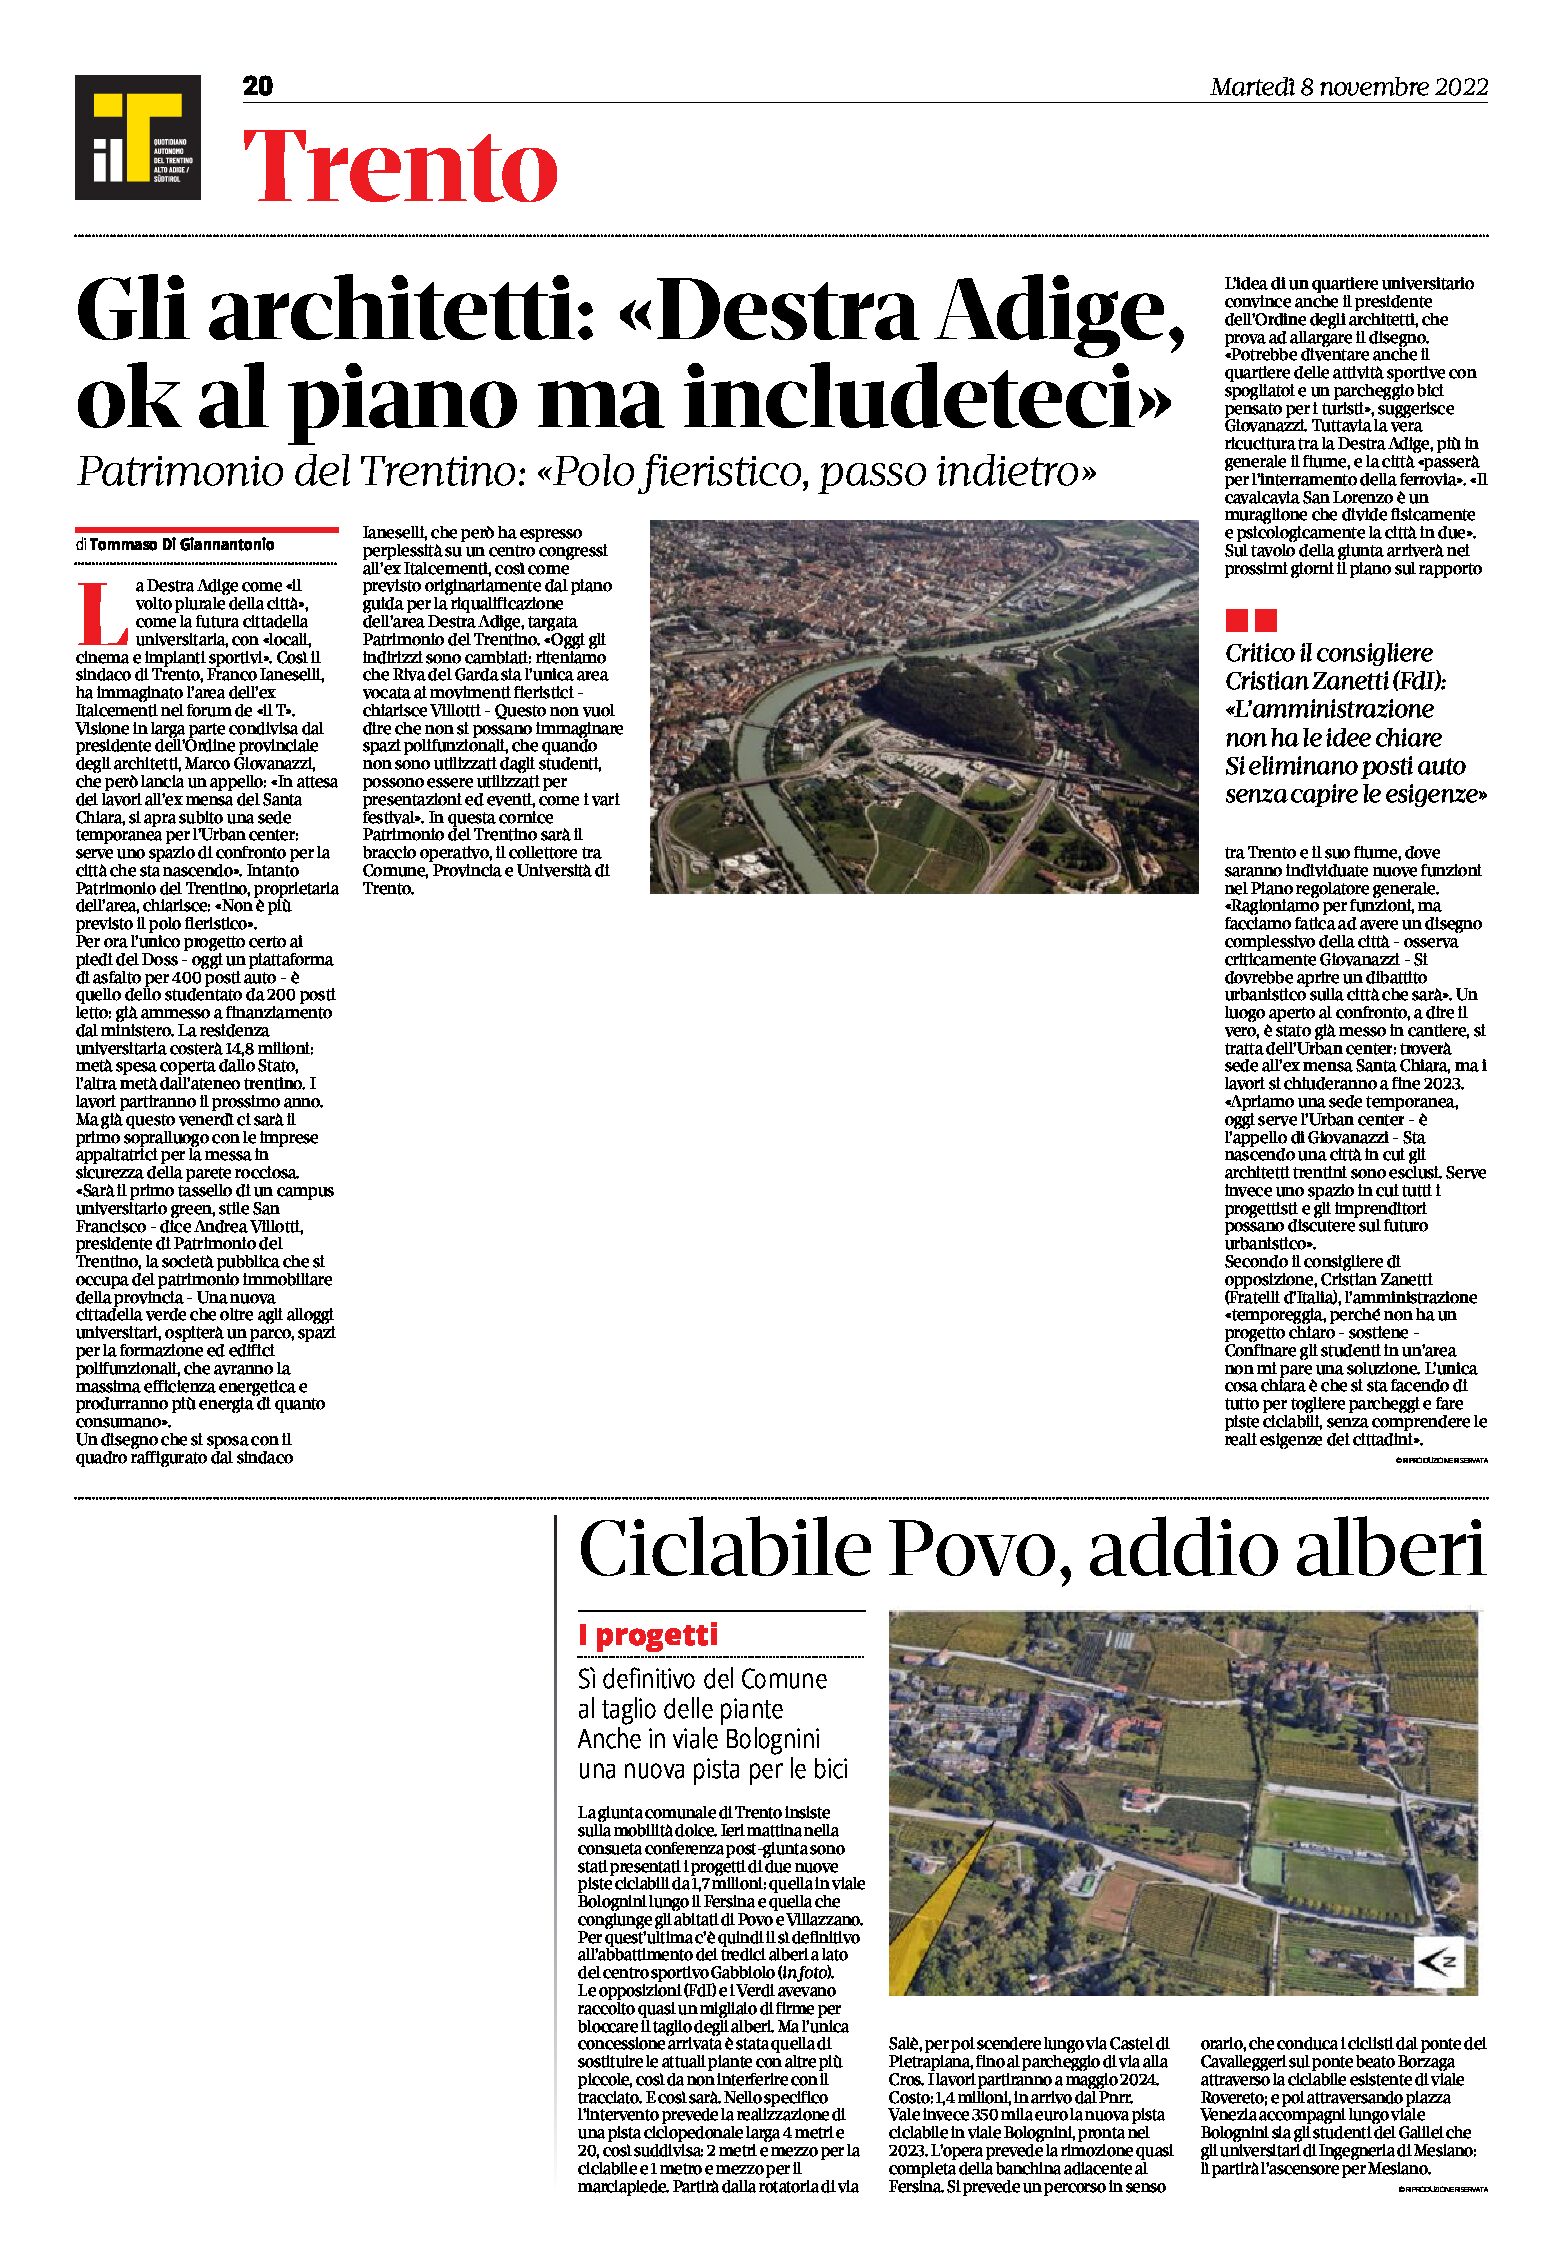 Trento: gli architetti “Destra Adige, ok al piano ma includeteci”